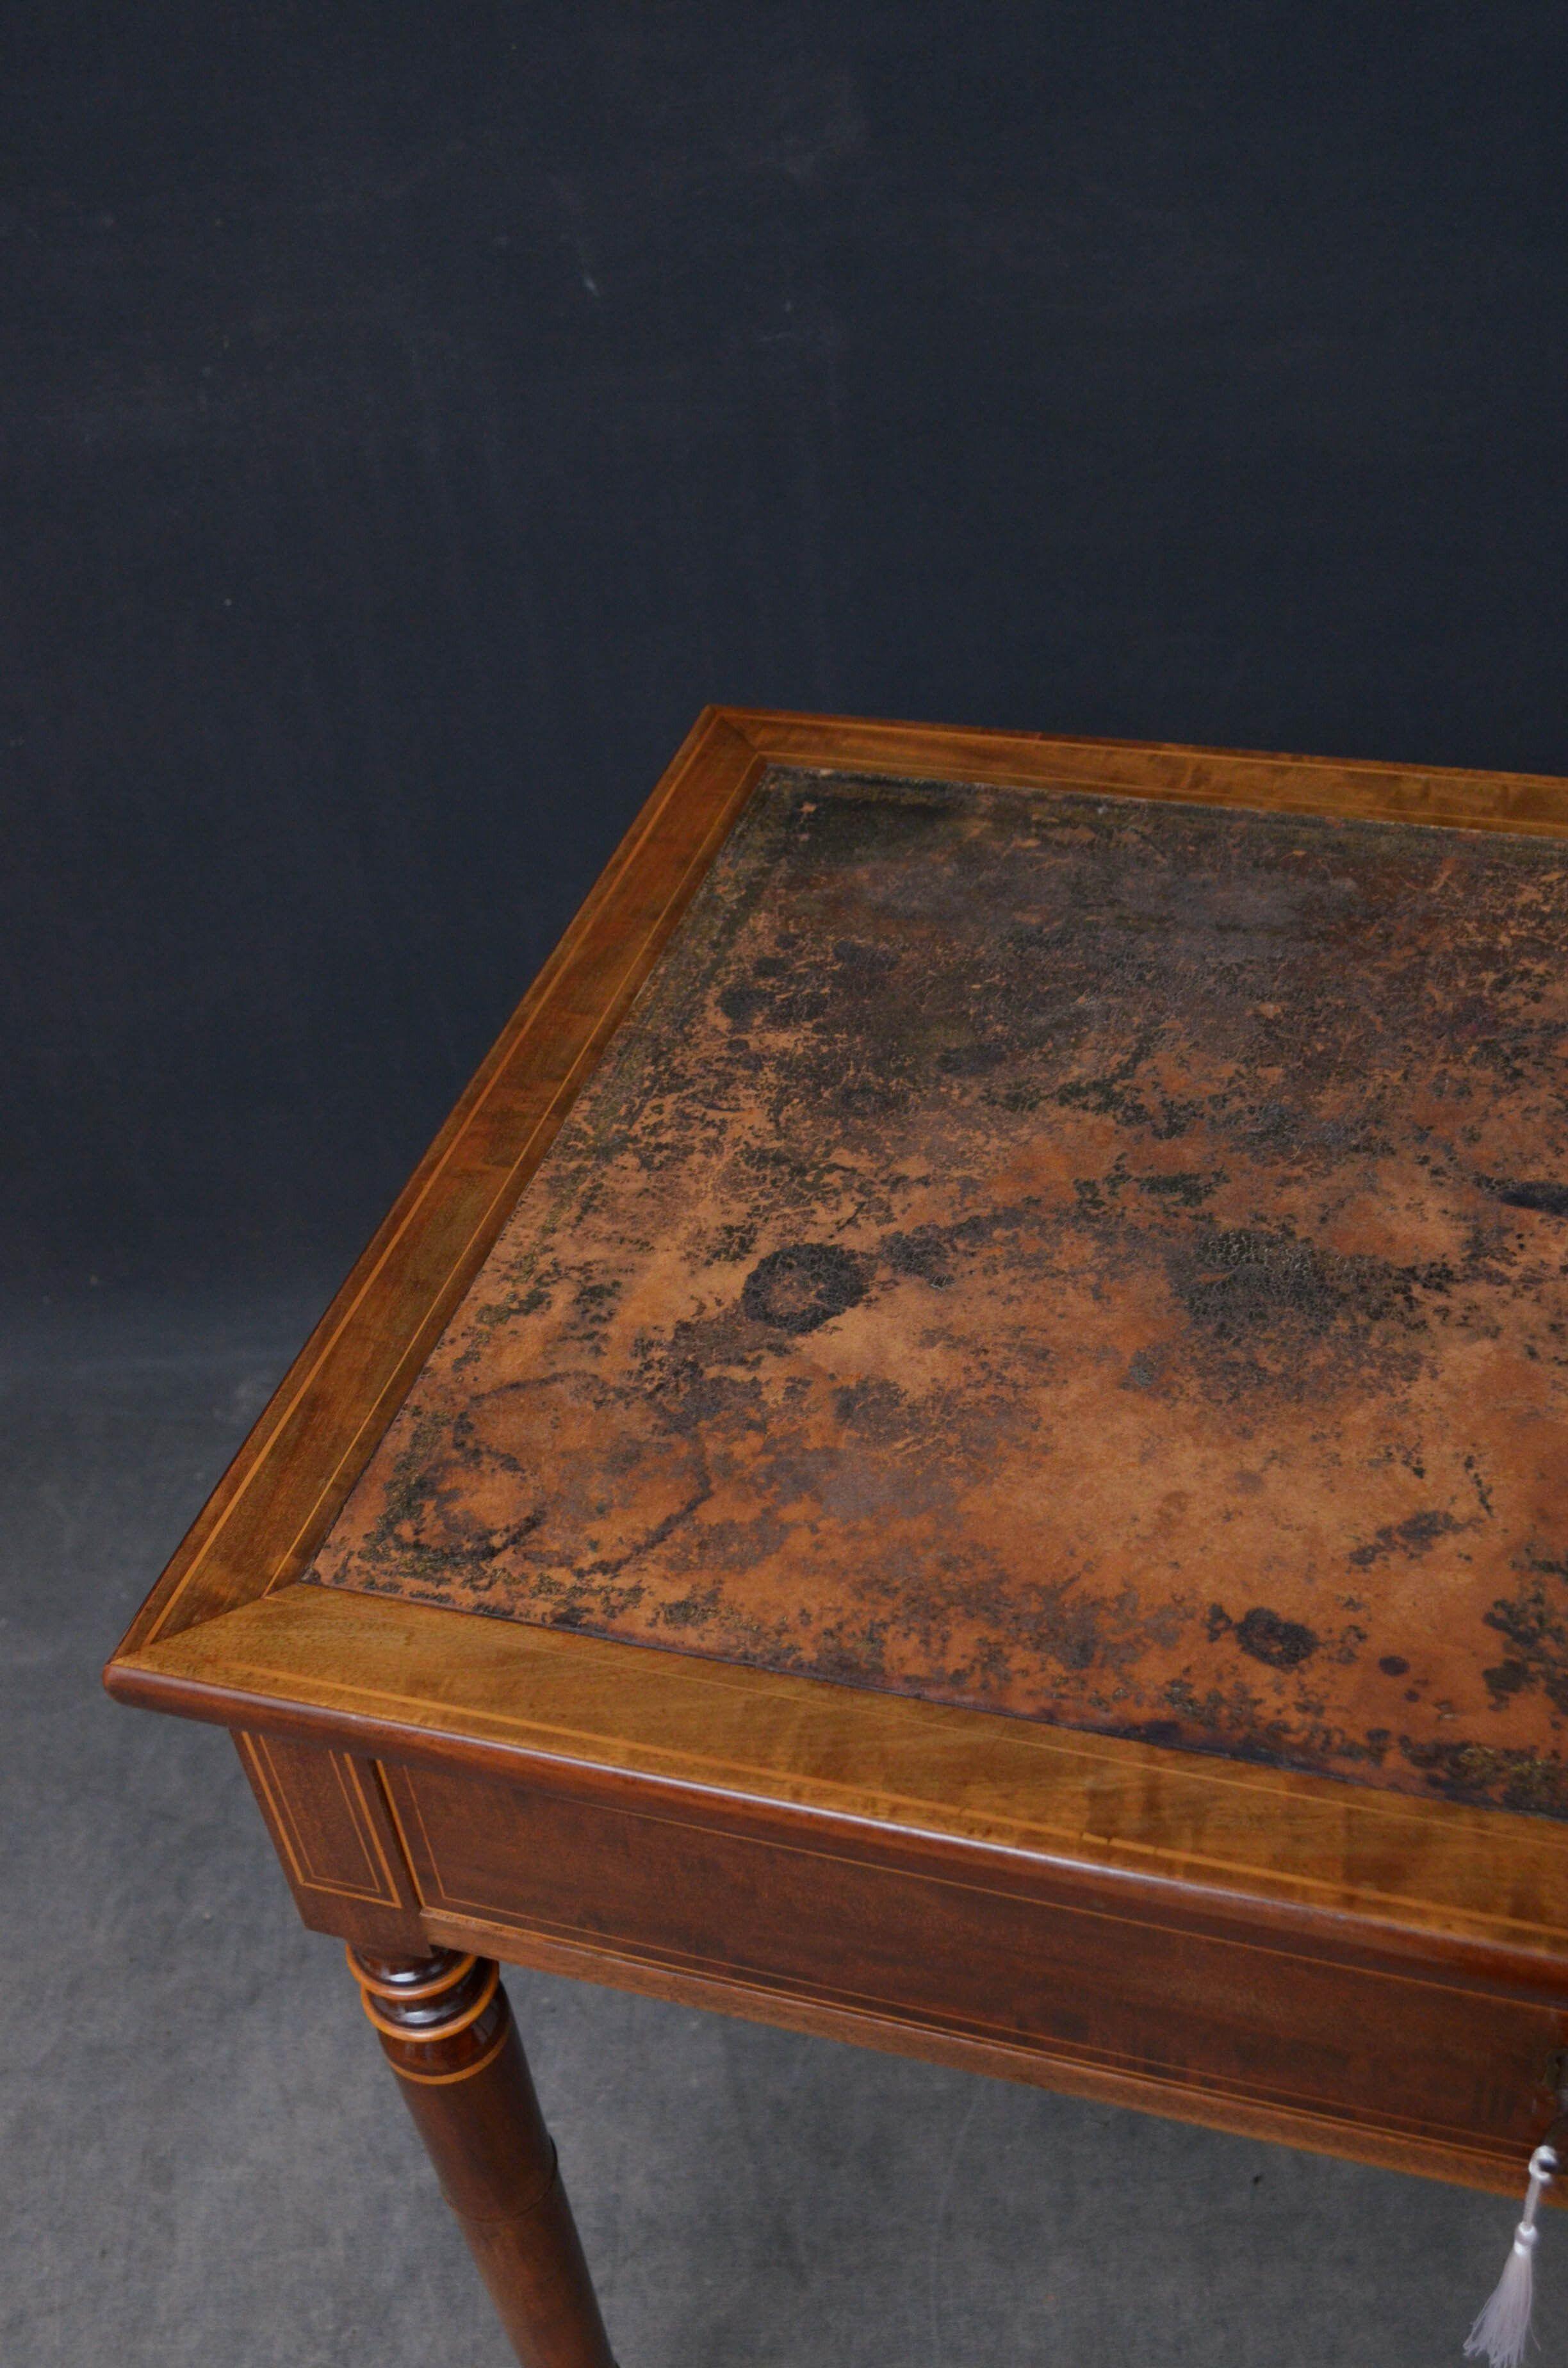 Sn5242 Attraktiver Mahagoni-Tisch mit originaler lederner Schreibfläche, die viel benutzt wurde und einen guten antiken Charakter aufweist, über einer Fries-Schublade, die mit einem originalen funktionierenden Schloss und einem Schlüssel